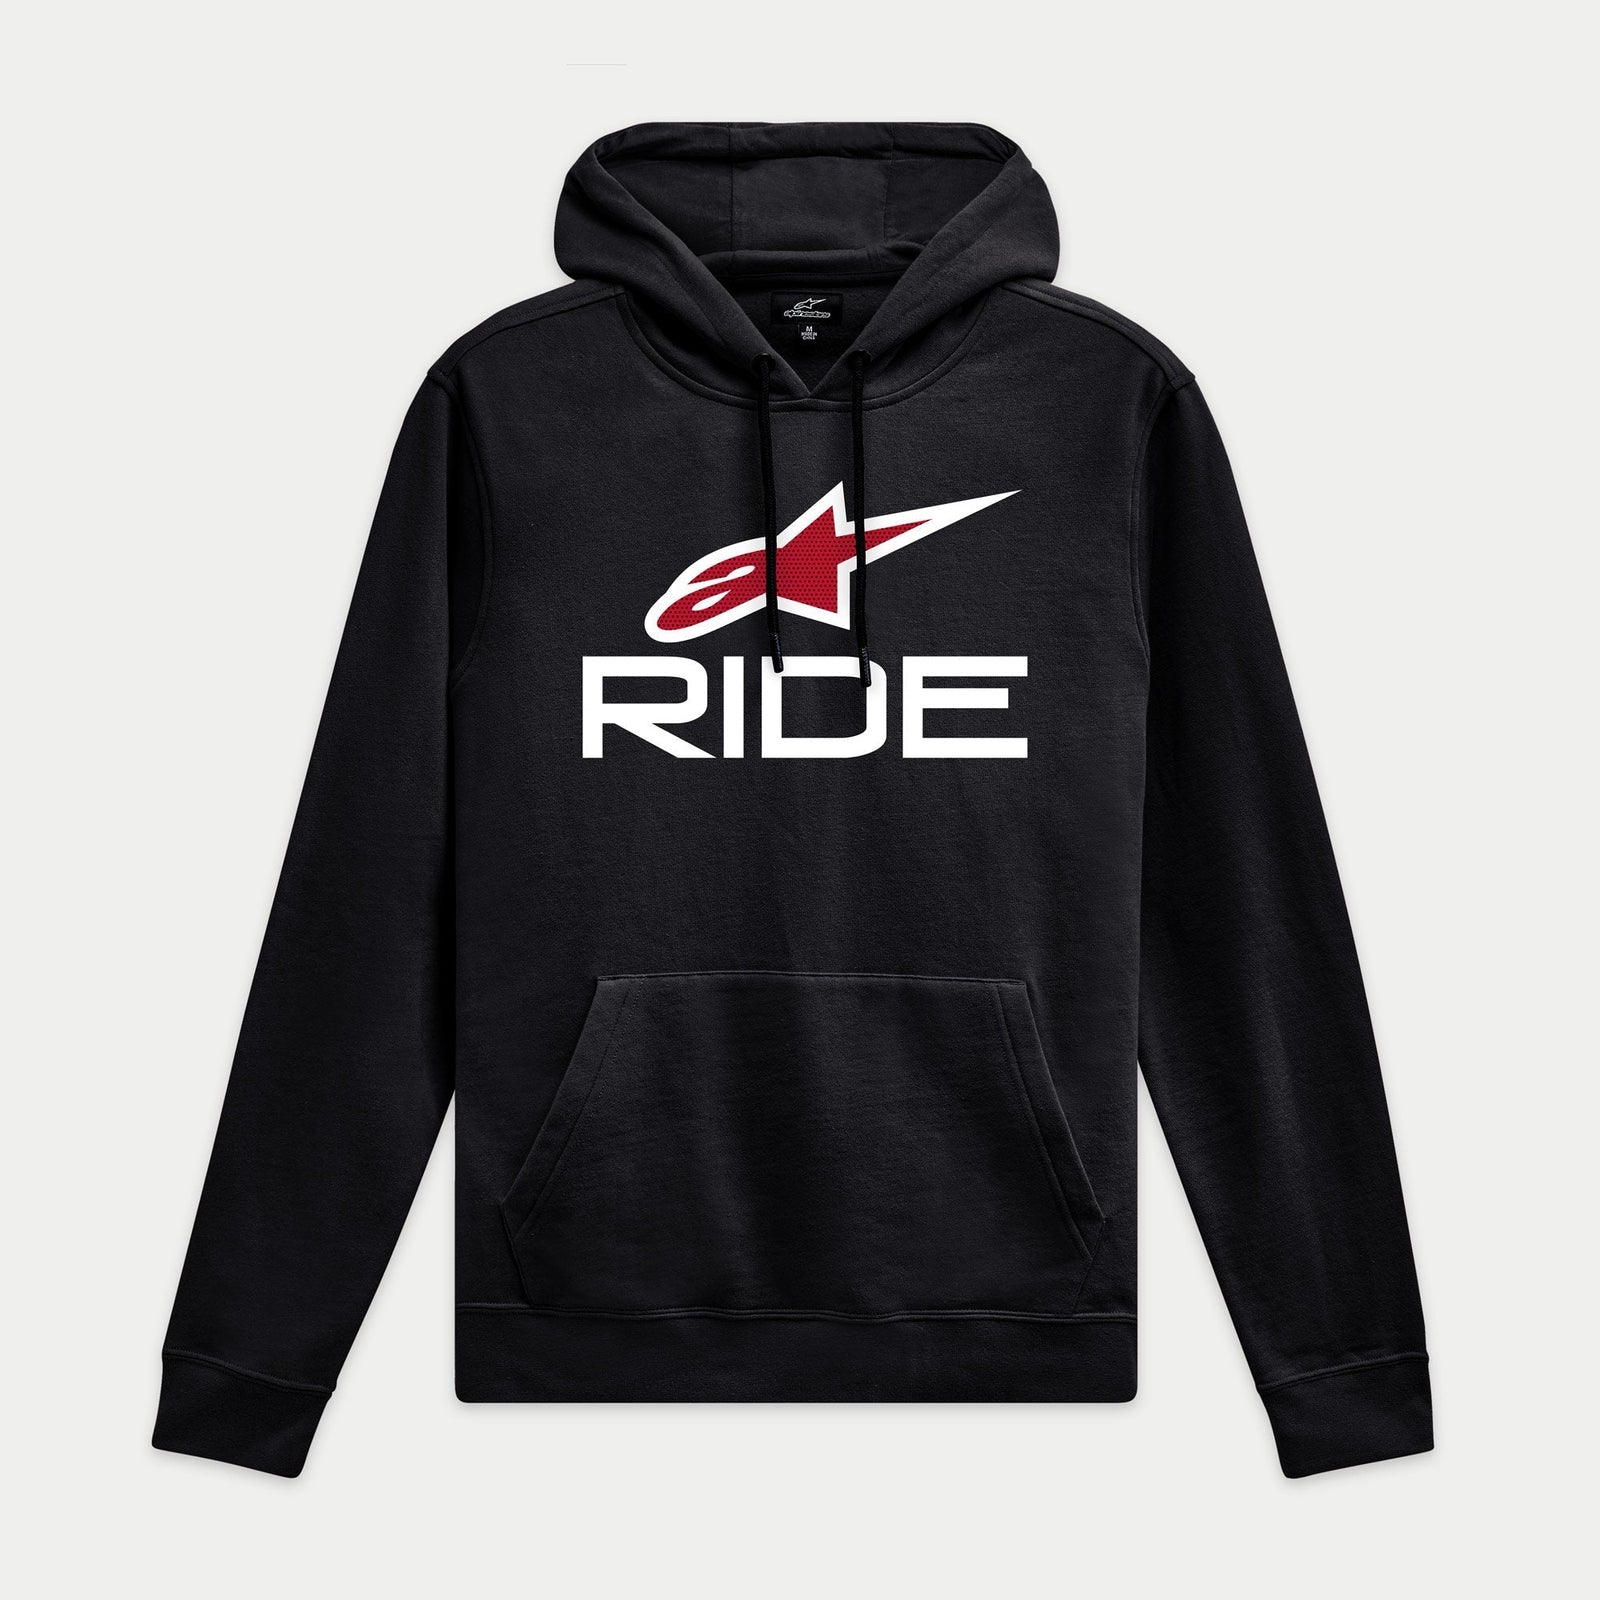 Ride 4.0 Hoodie